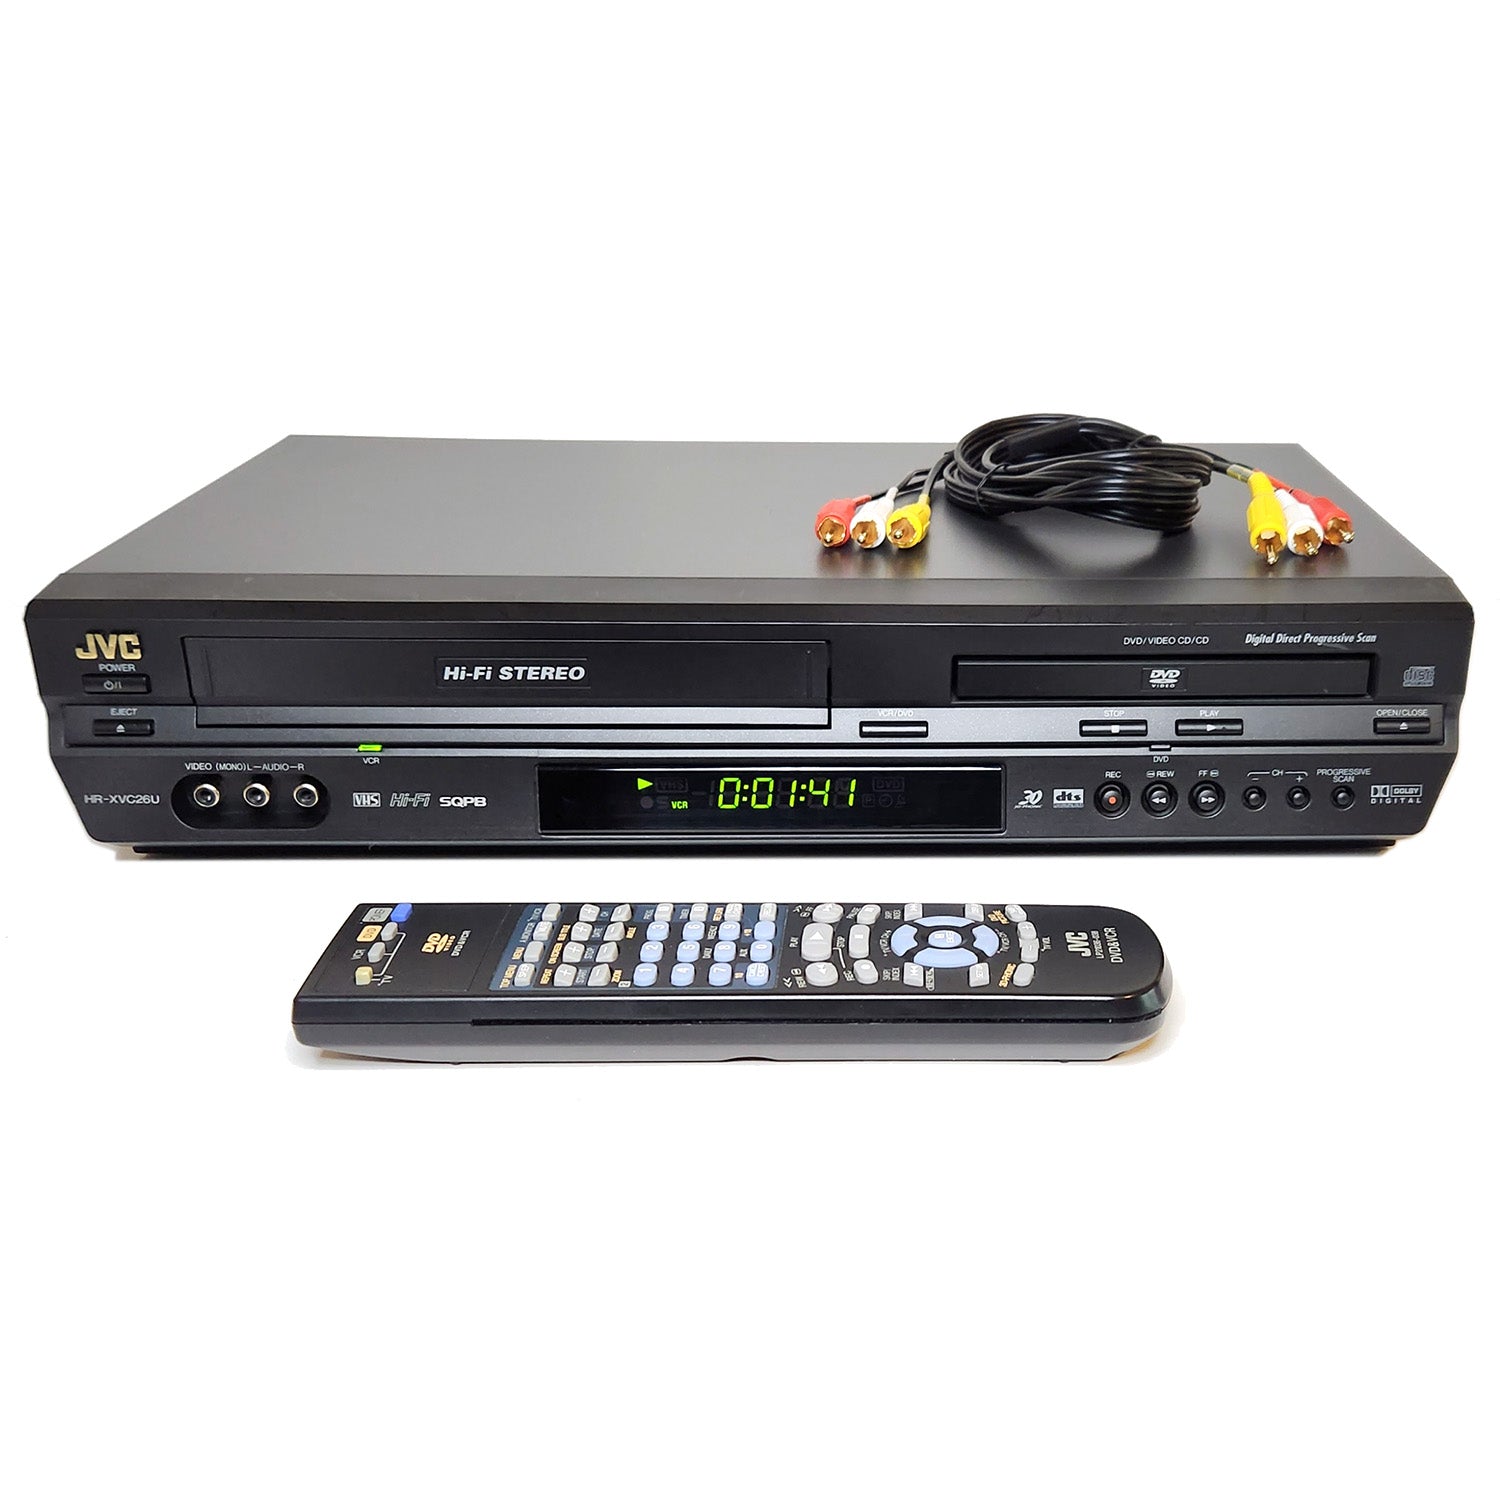 JVC HR-XVC26U VCR/DVD Player Combo